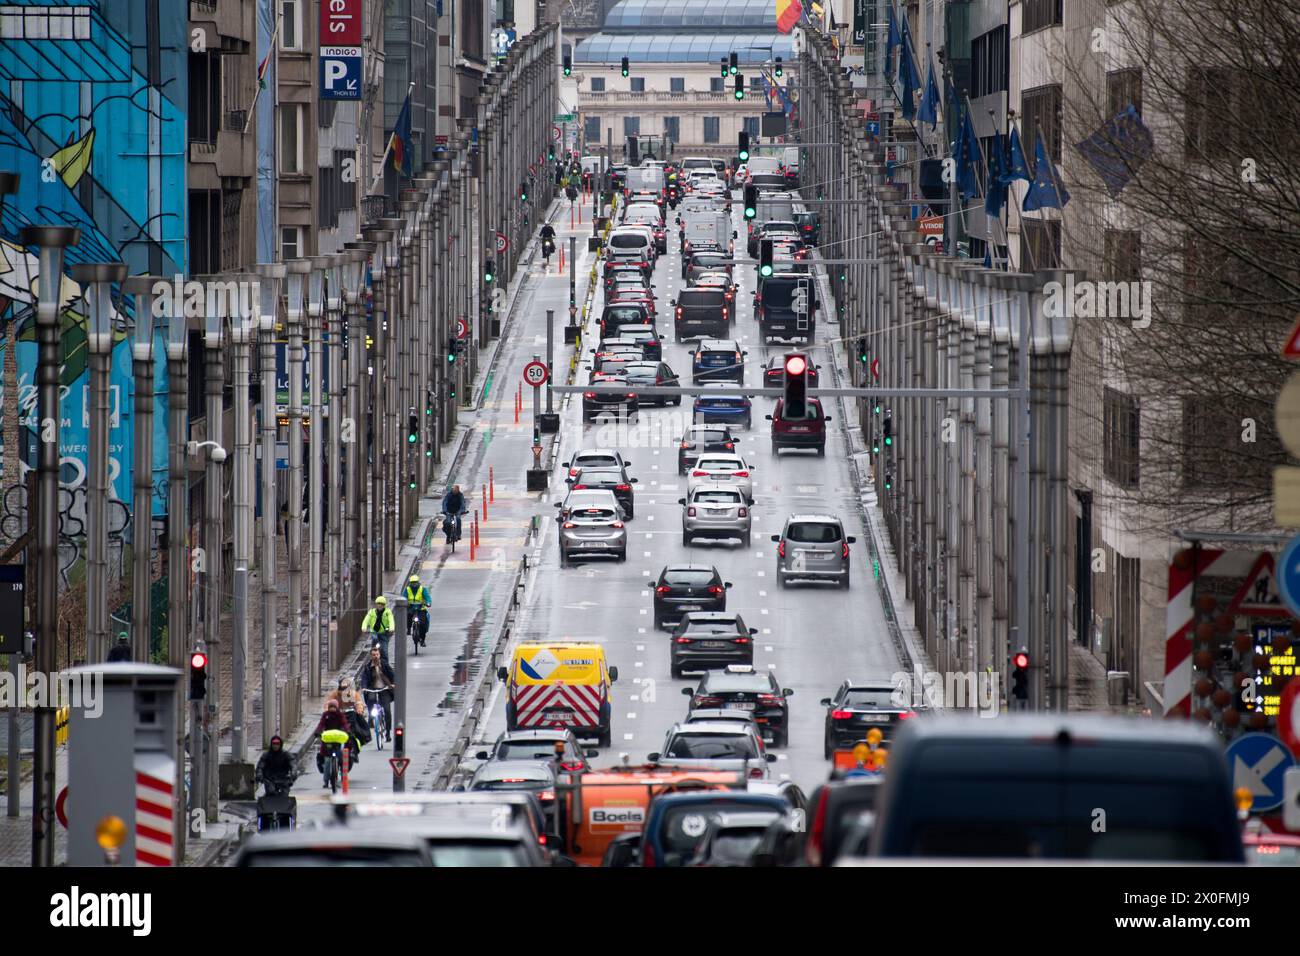 Rue de la Loi / Wetstraat nel quartiere europeo di Bruxelles, Belgio © Wojciech Strozyk / Alamy Stock Photo *** Local Caption *** Foto Stock